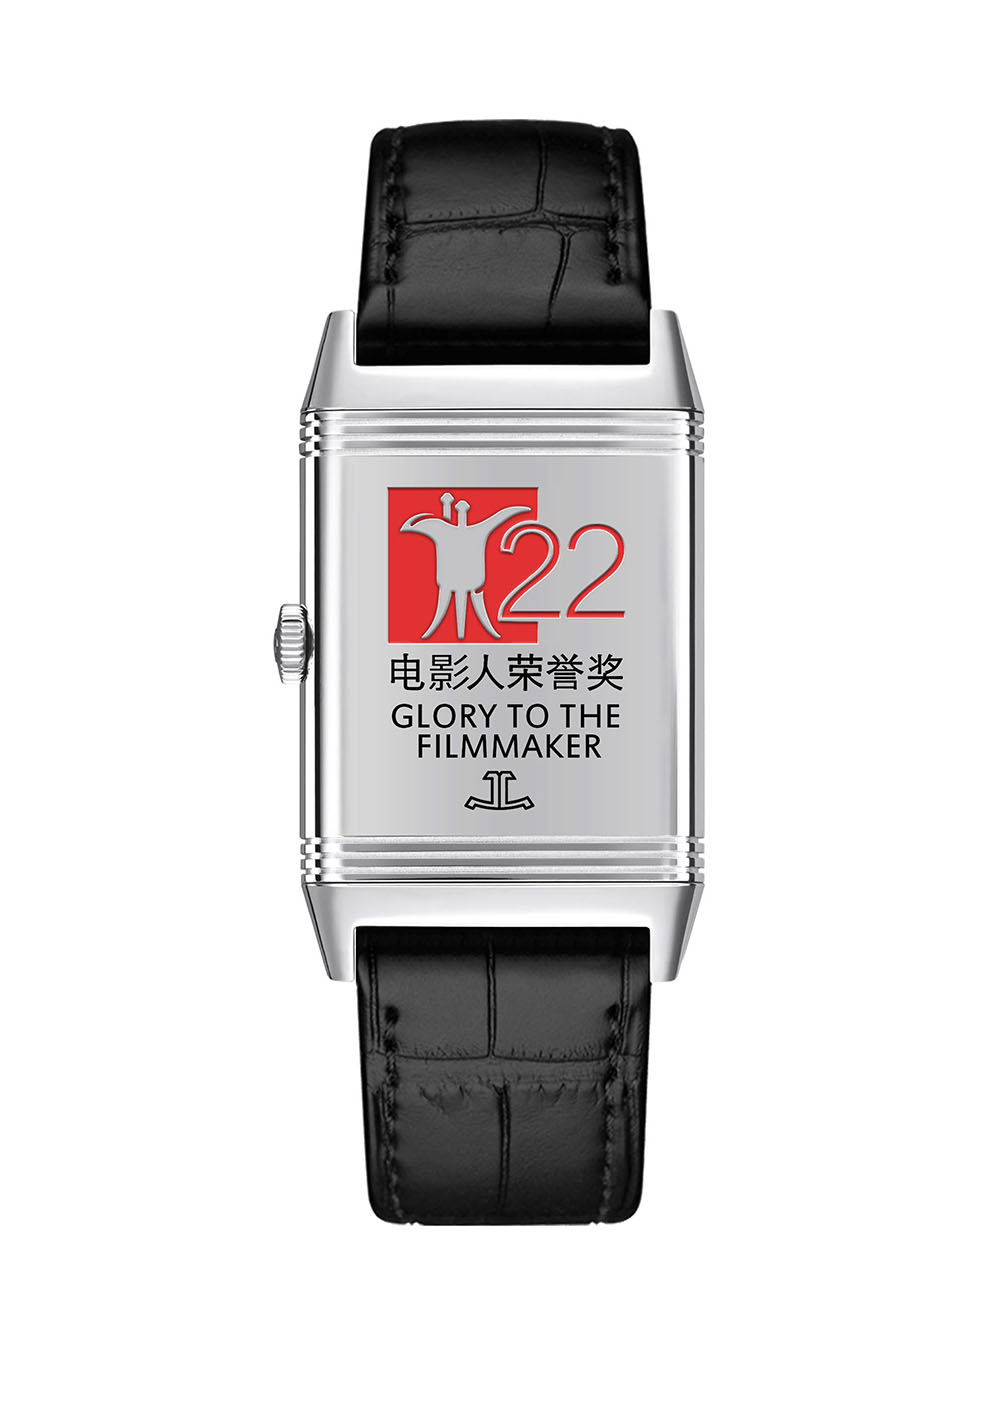 积家Reverso翻转系列腕表 - 背面镌刻第22届上海国际电影节电影人荣誉奖标志.jpg